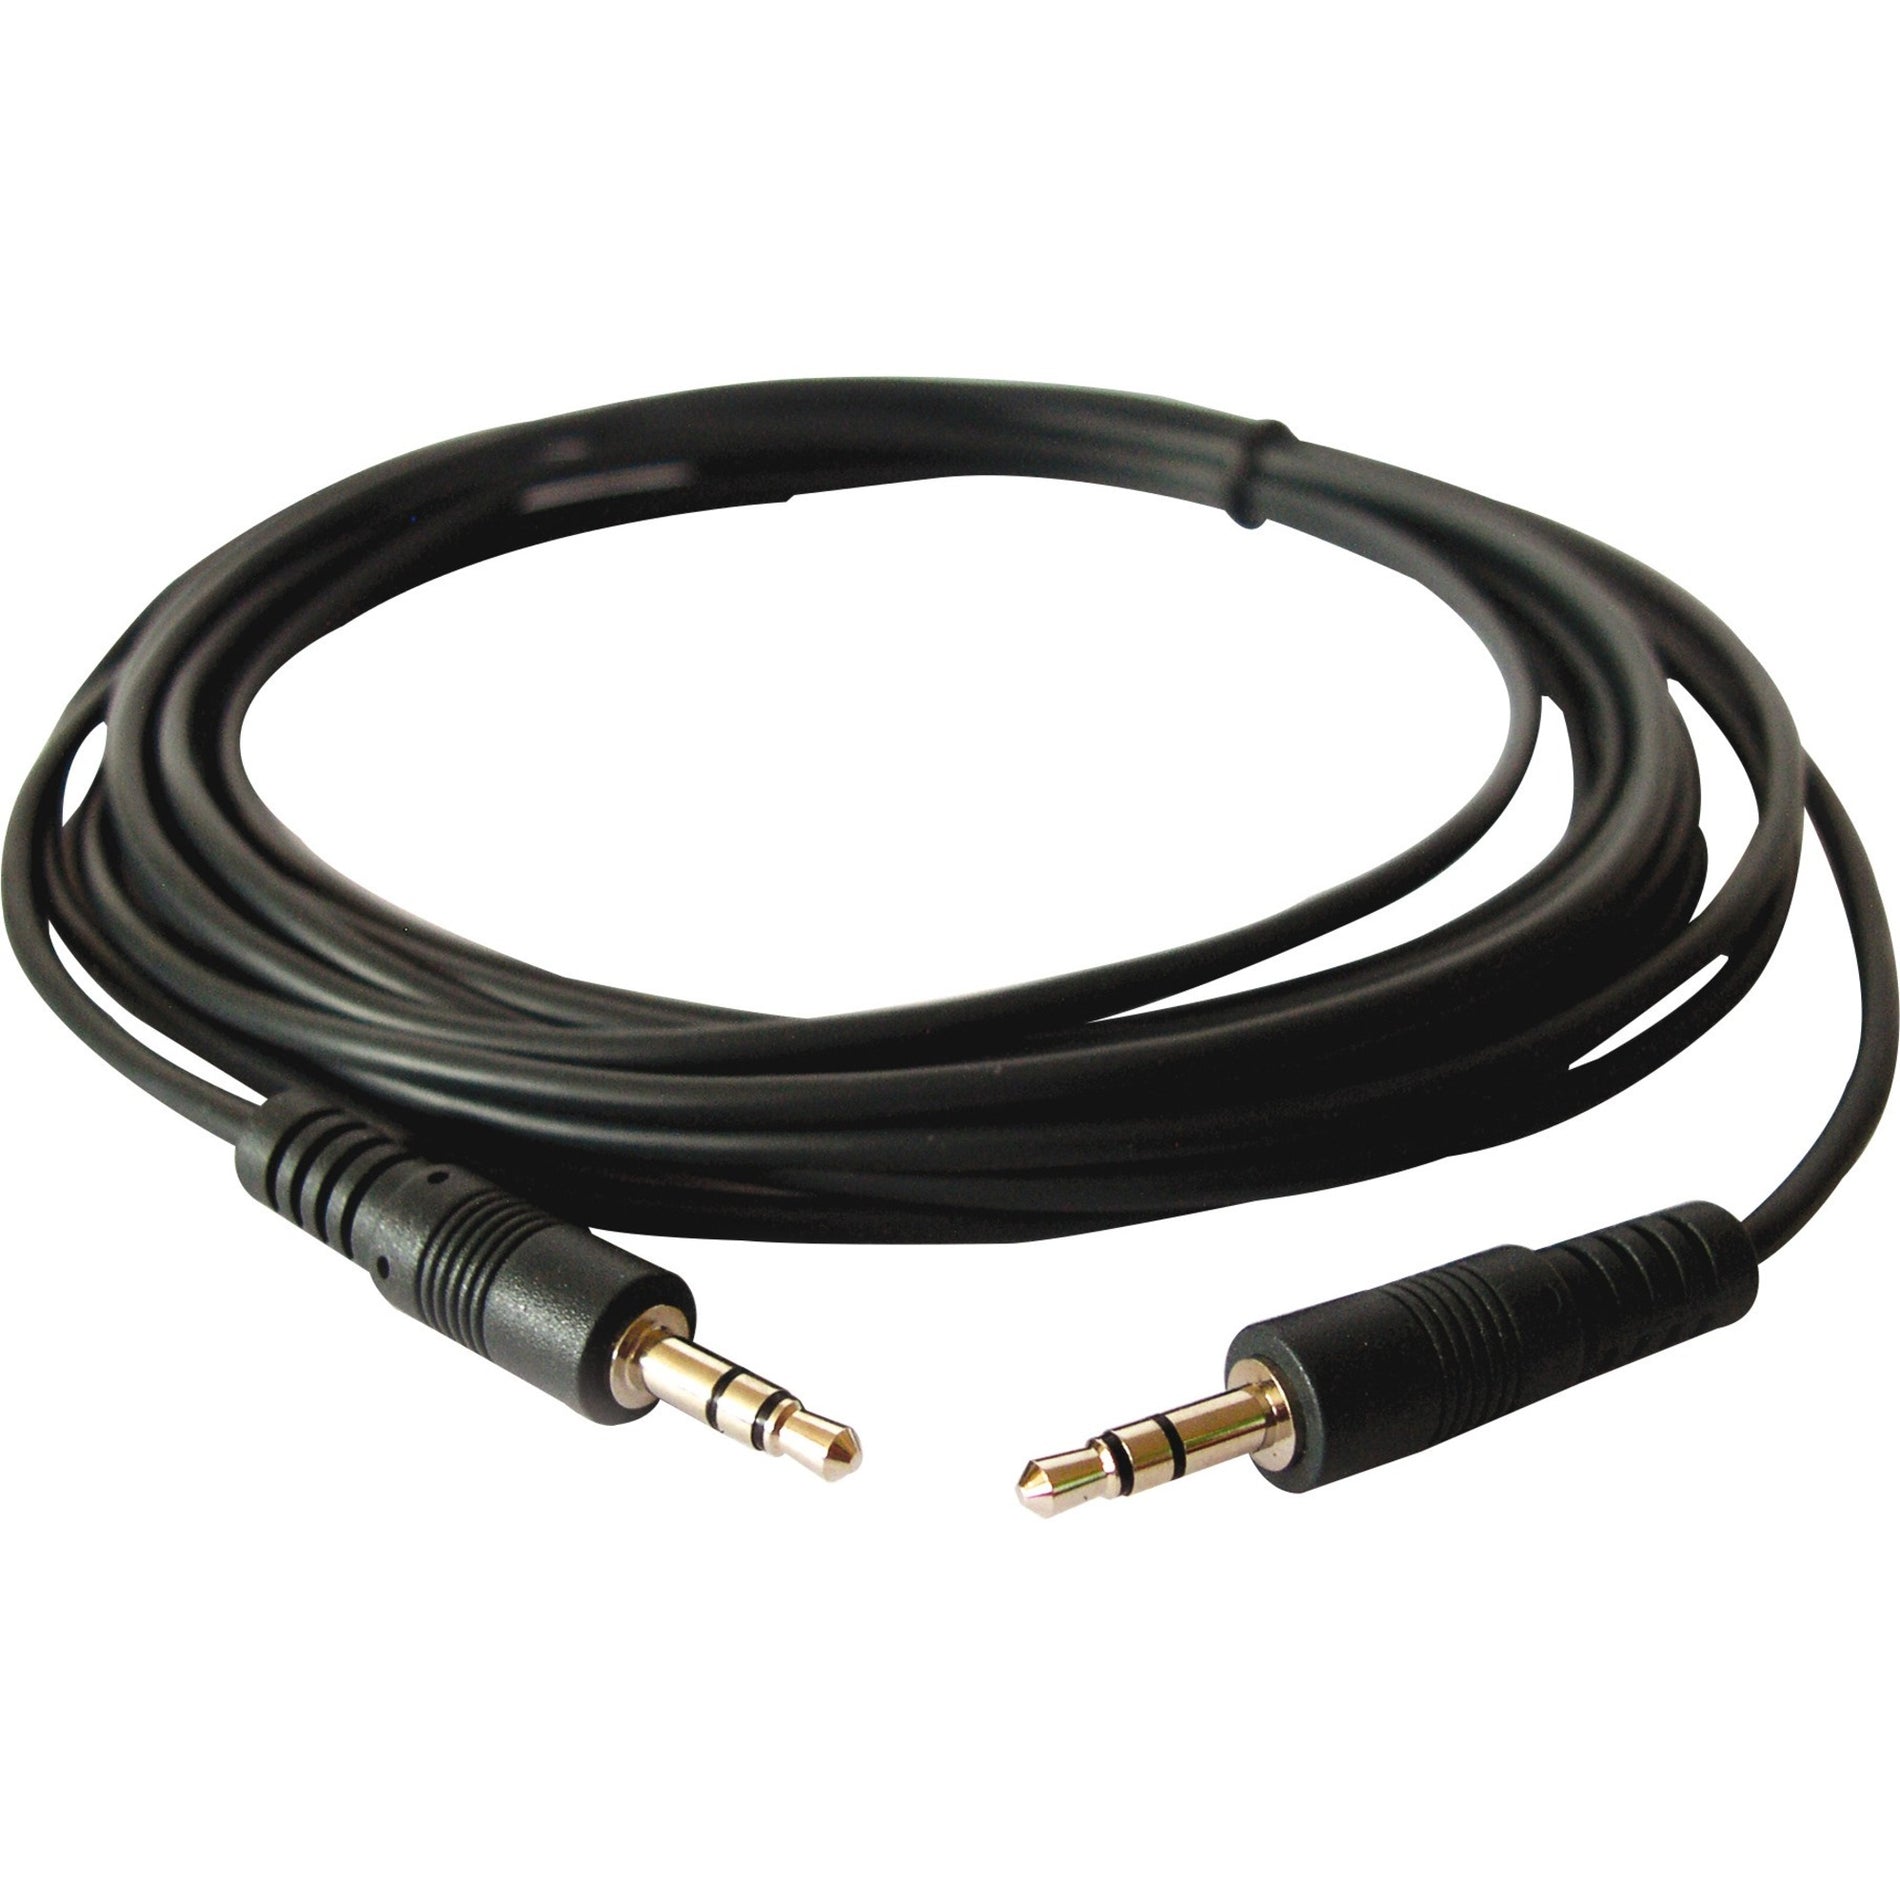 Kramer 95-0101015 3.5mm Stereo Audio Cable, 15 ft, Molded, Flexible